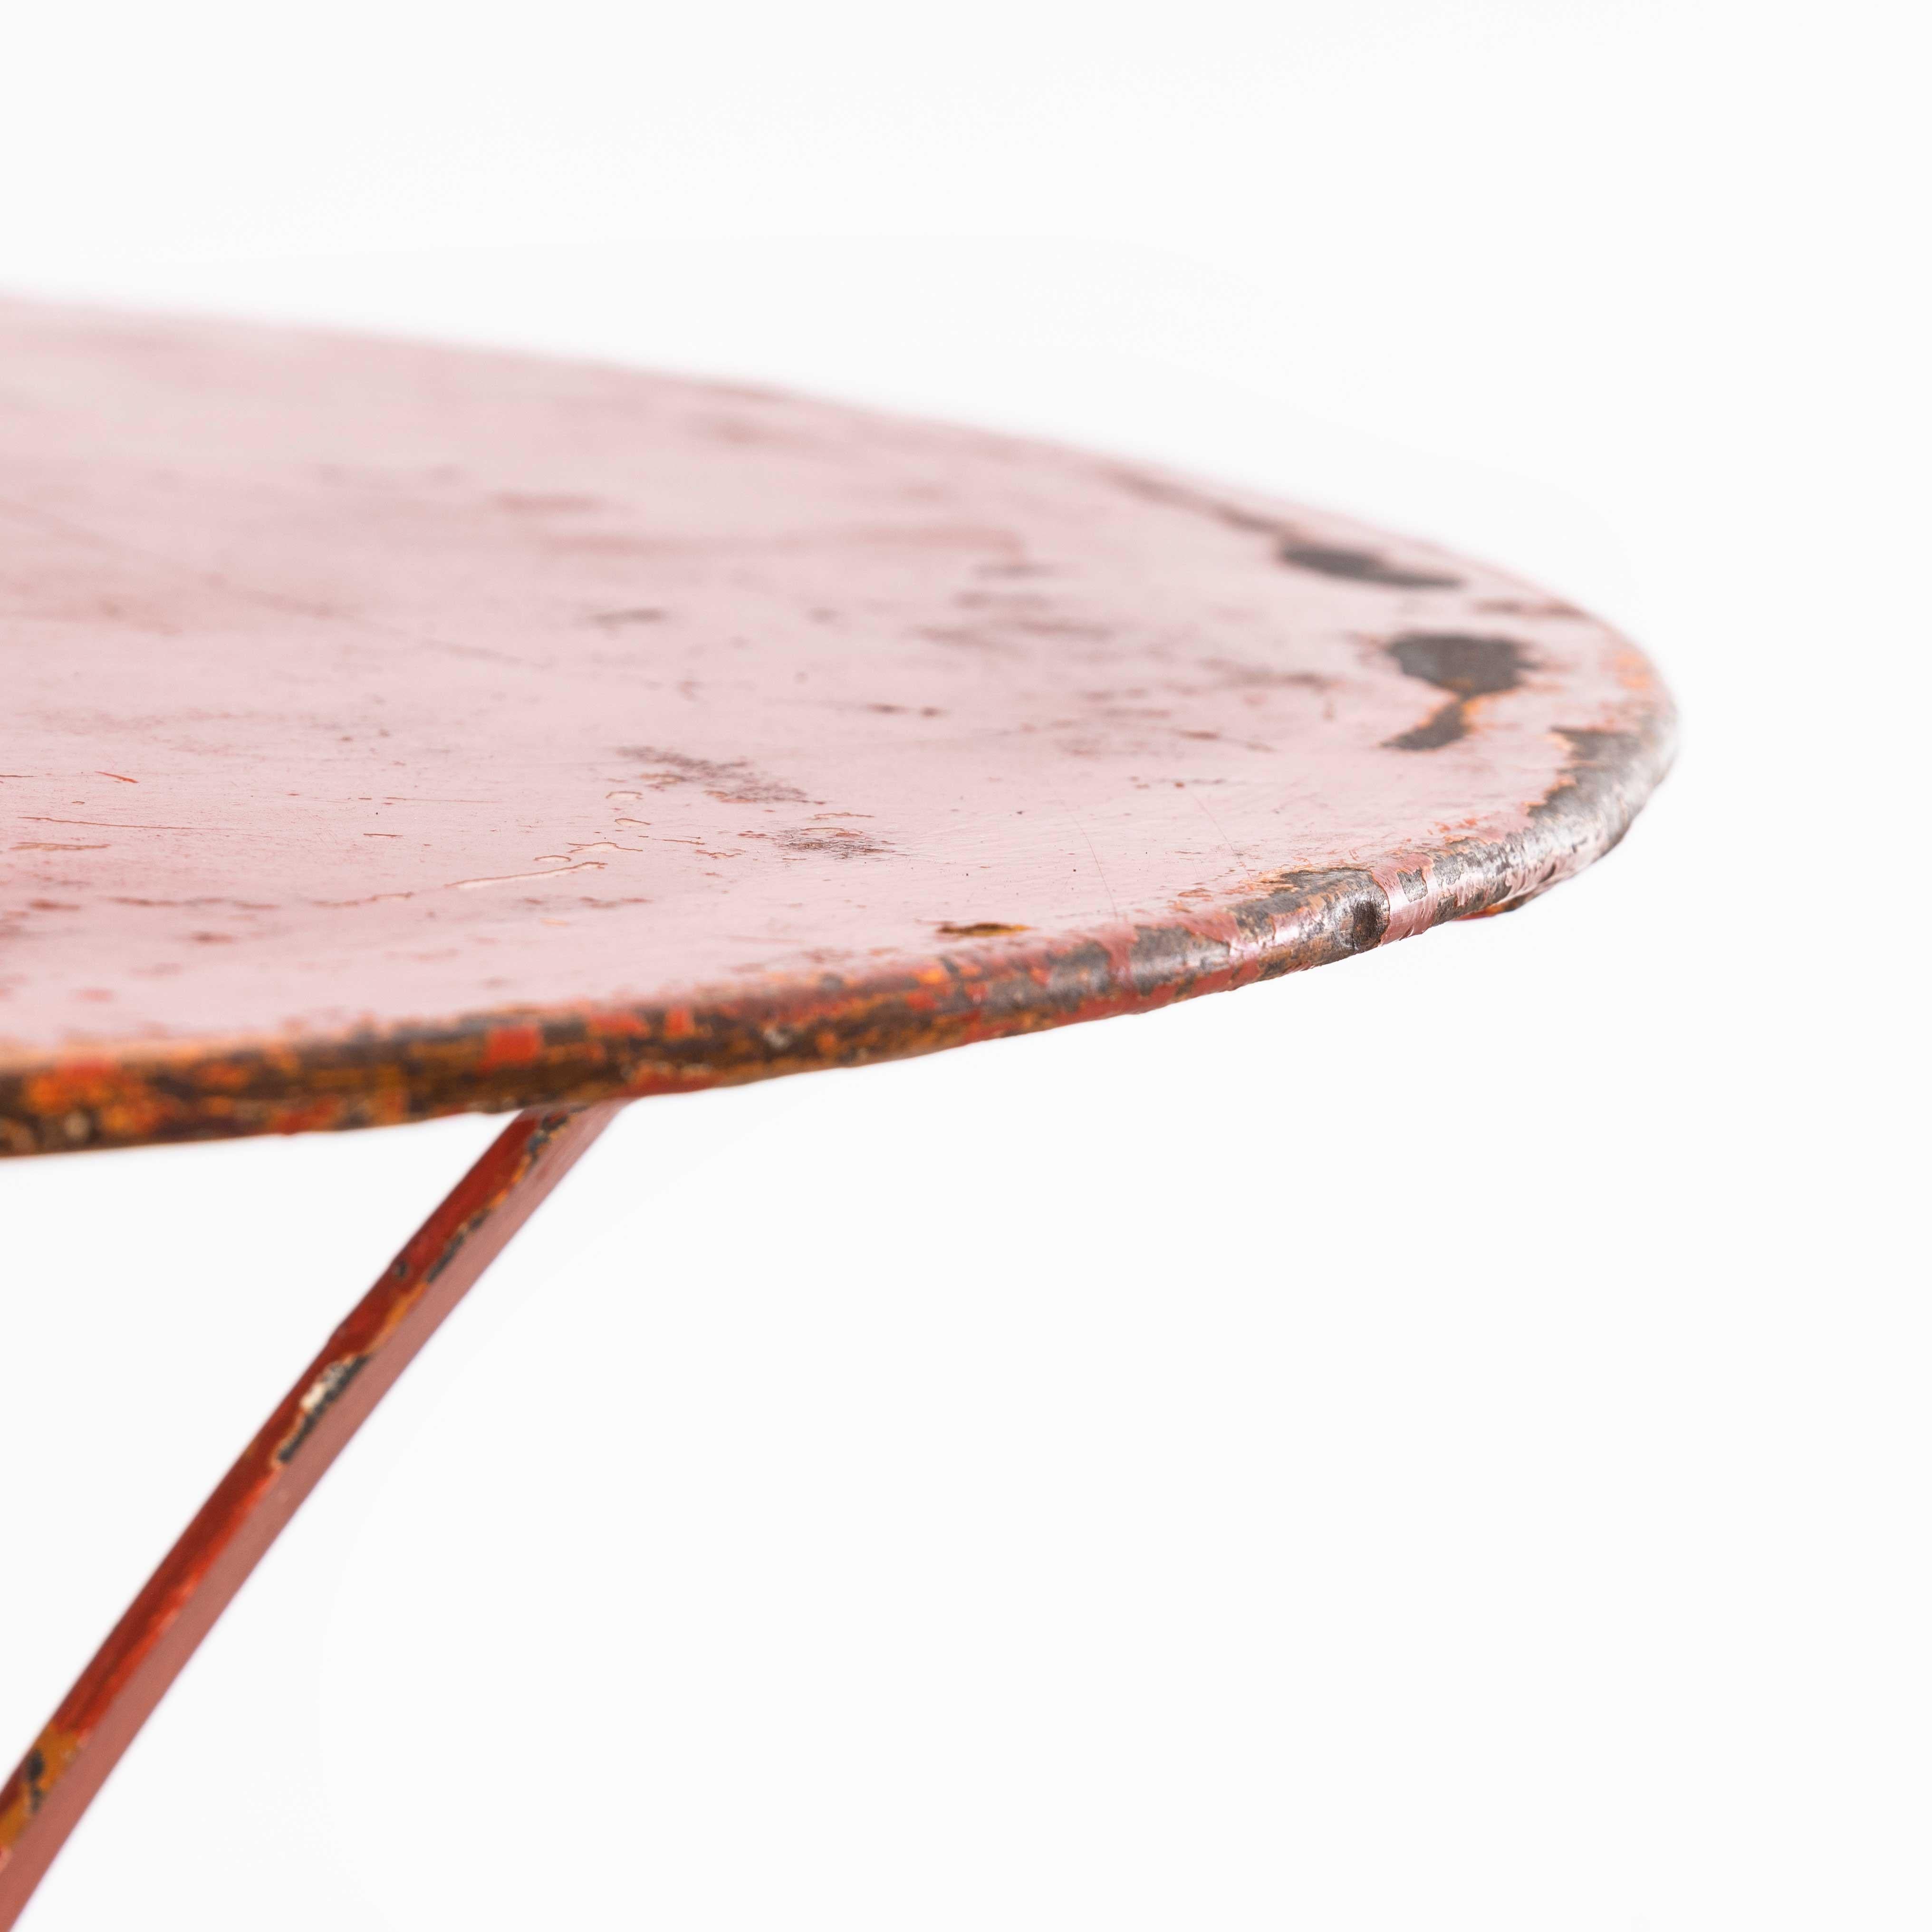 Table de jardin ronde en métal rouge des années 1950
Table de jardin ronde en métal rouge des années 1950. Bonne table de jardin d'origine française, avec des pieds en sangle et un anneau de support central. Robuste et en très bon état, la table